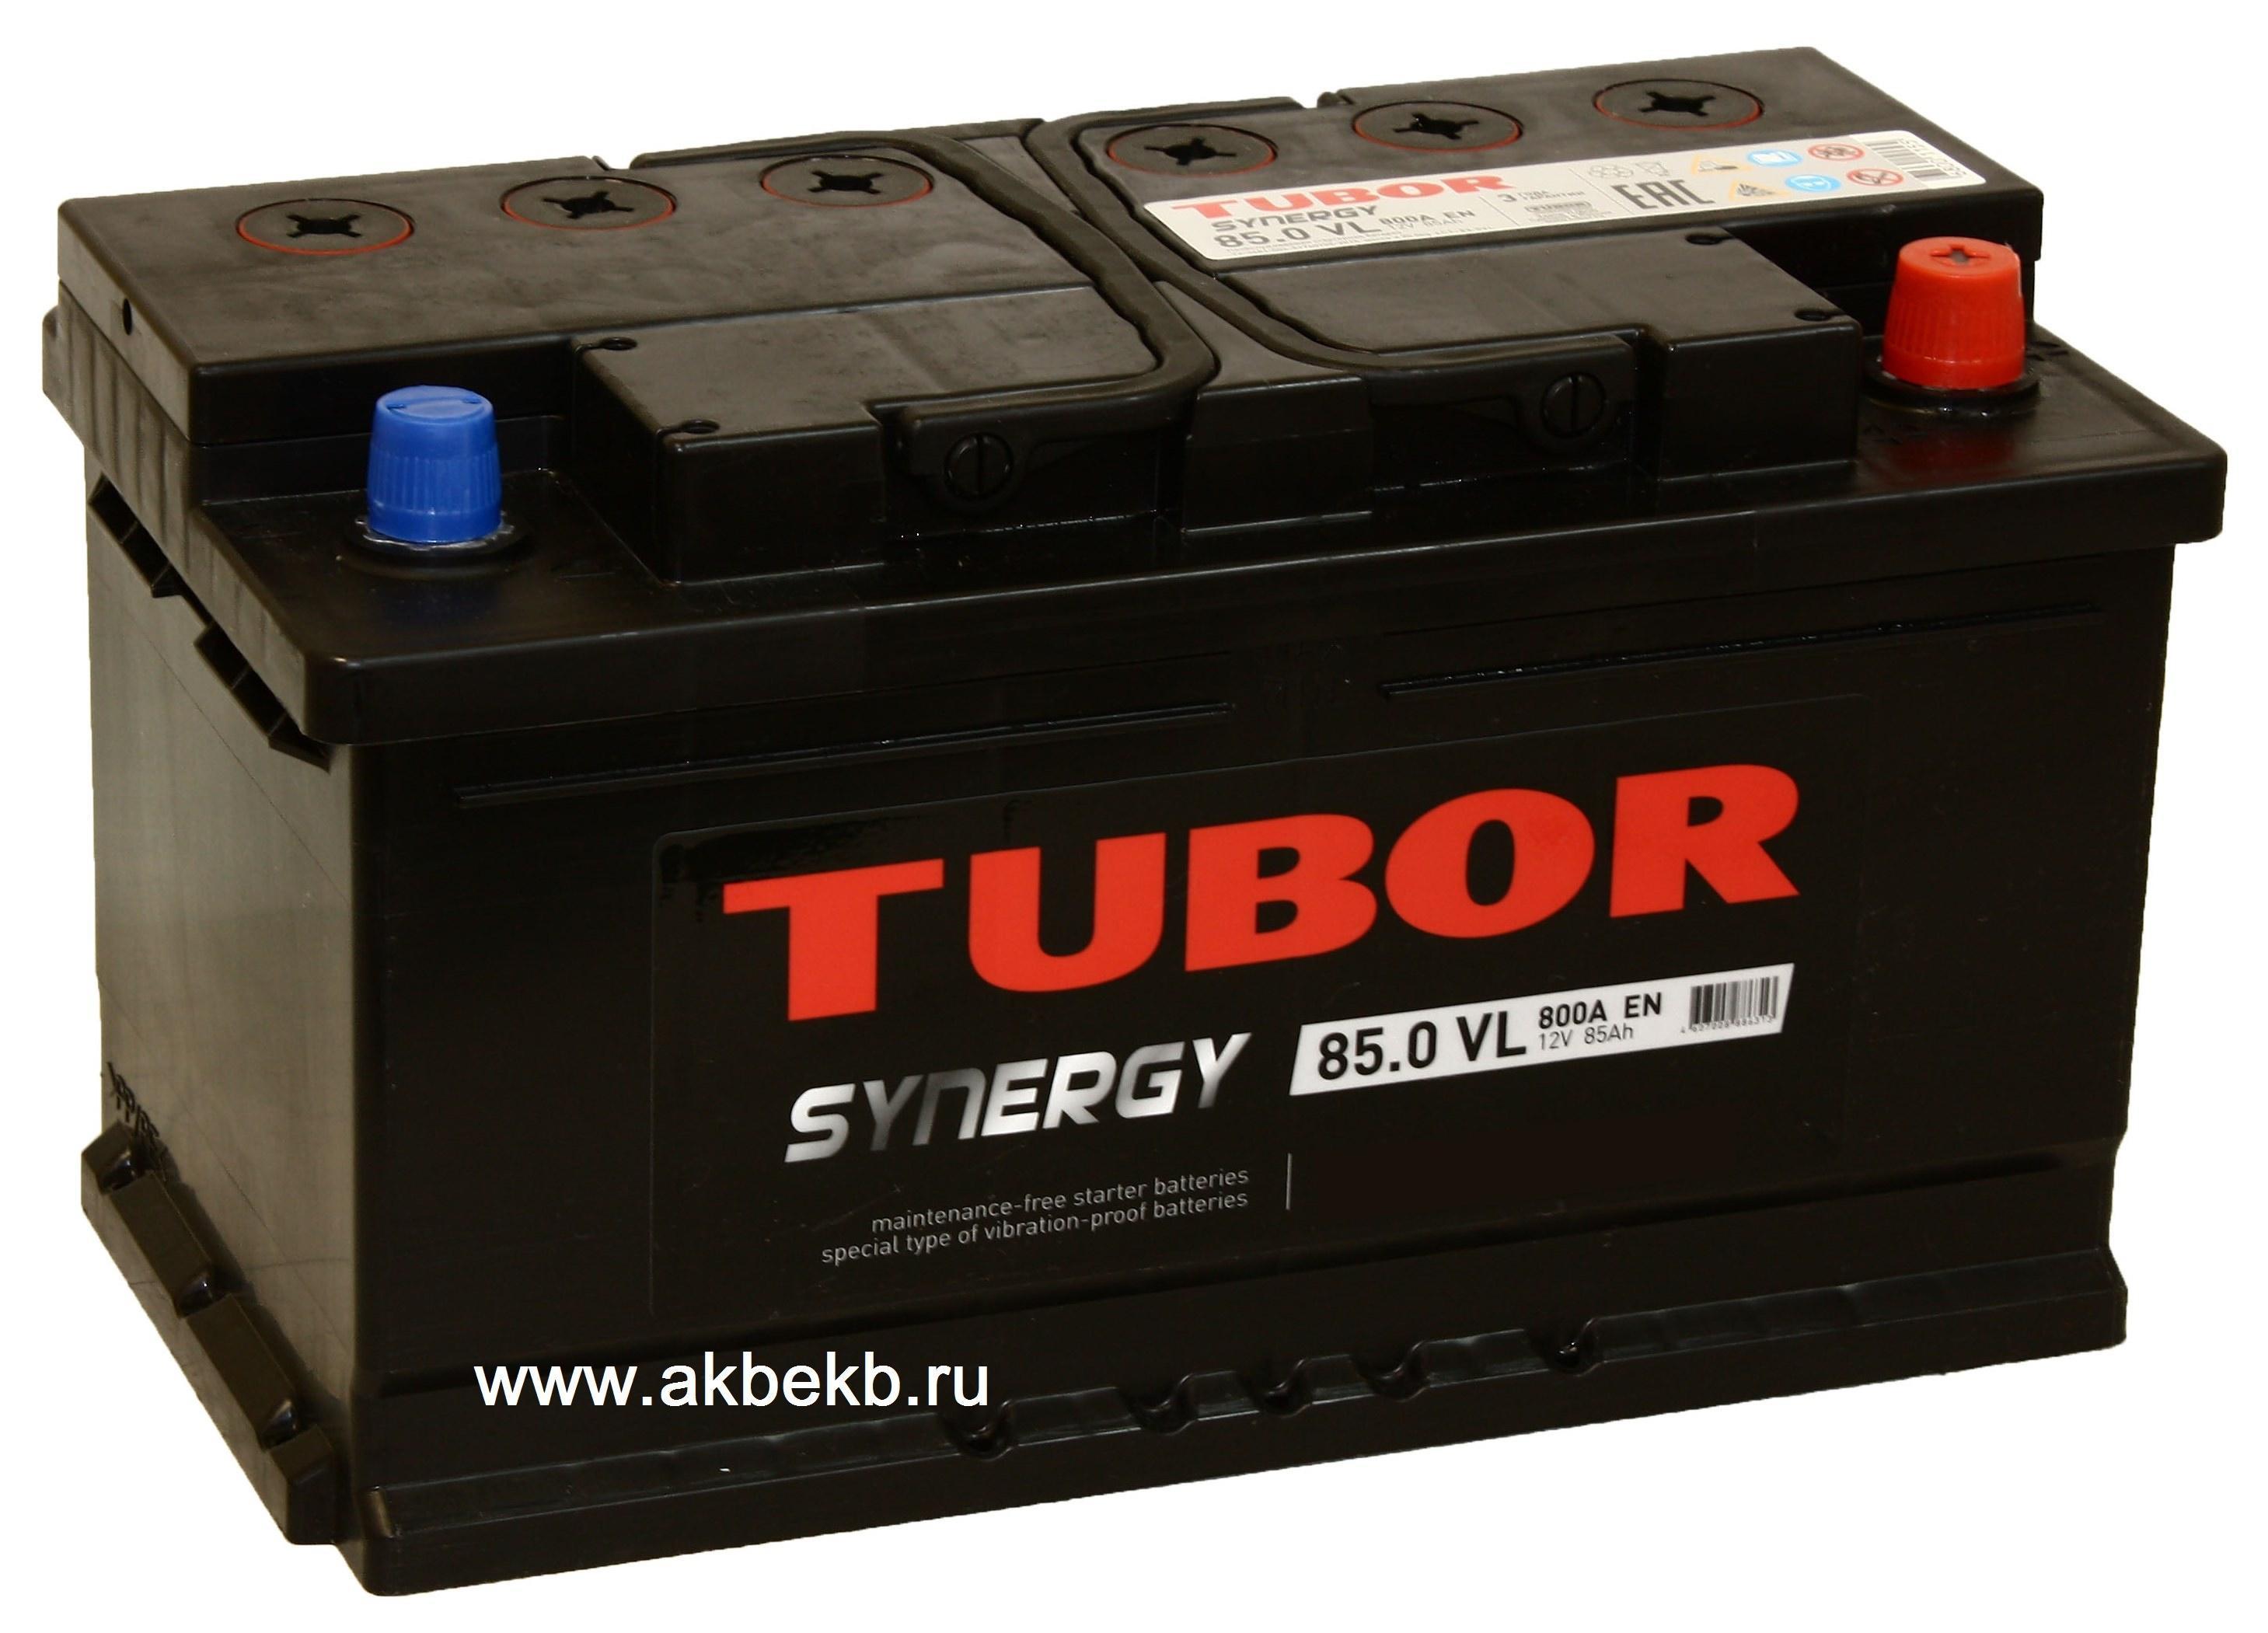 Аккумулятор 85 а ч. Аккумуляторы автомобильные Tybor sybergy. Тубор Синерджи 85 аккумулятор. Tubor Synergy 6ст-85.0 VL. 6ct85.0 Tubor АКБ.